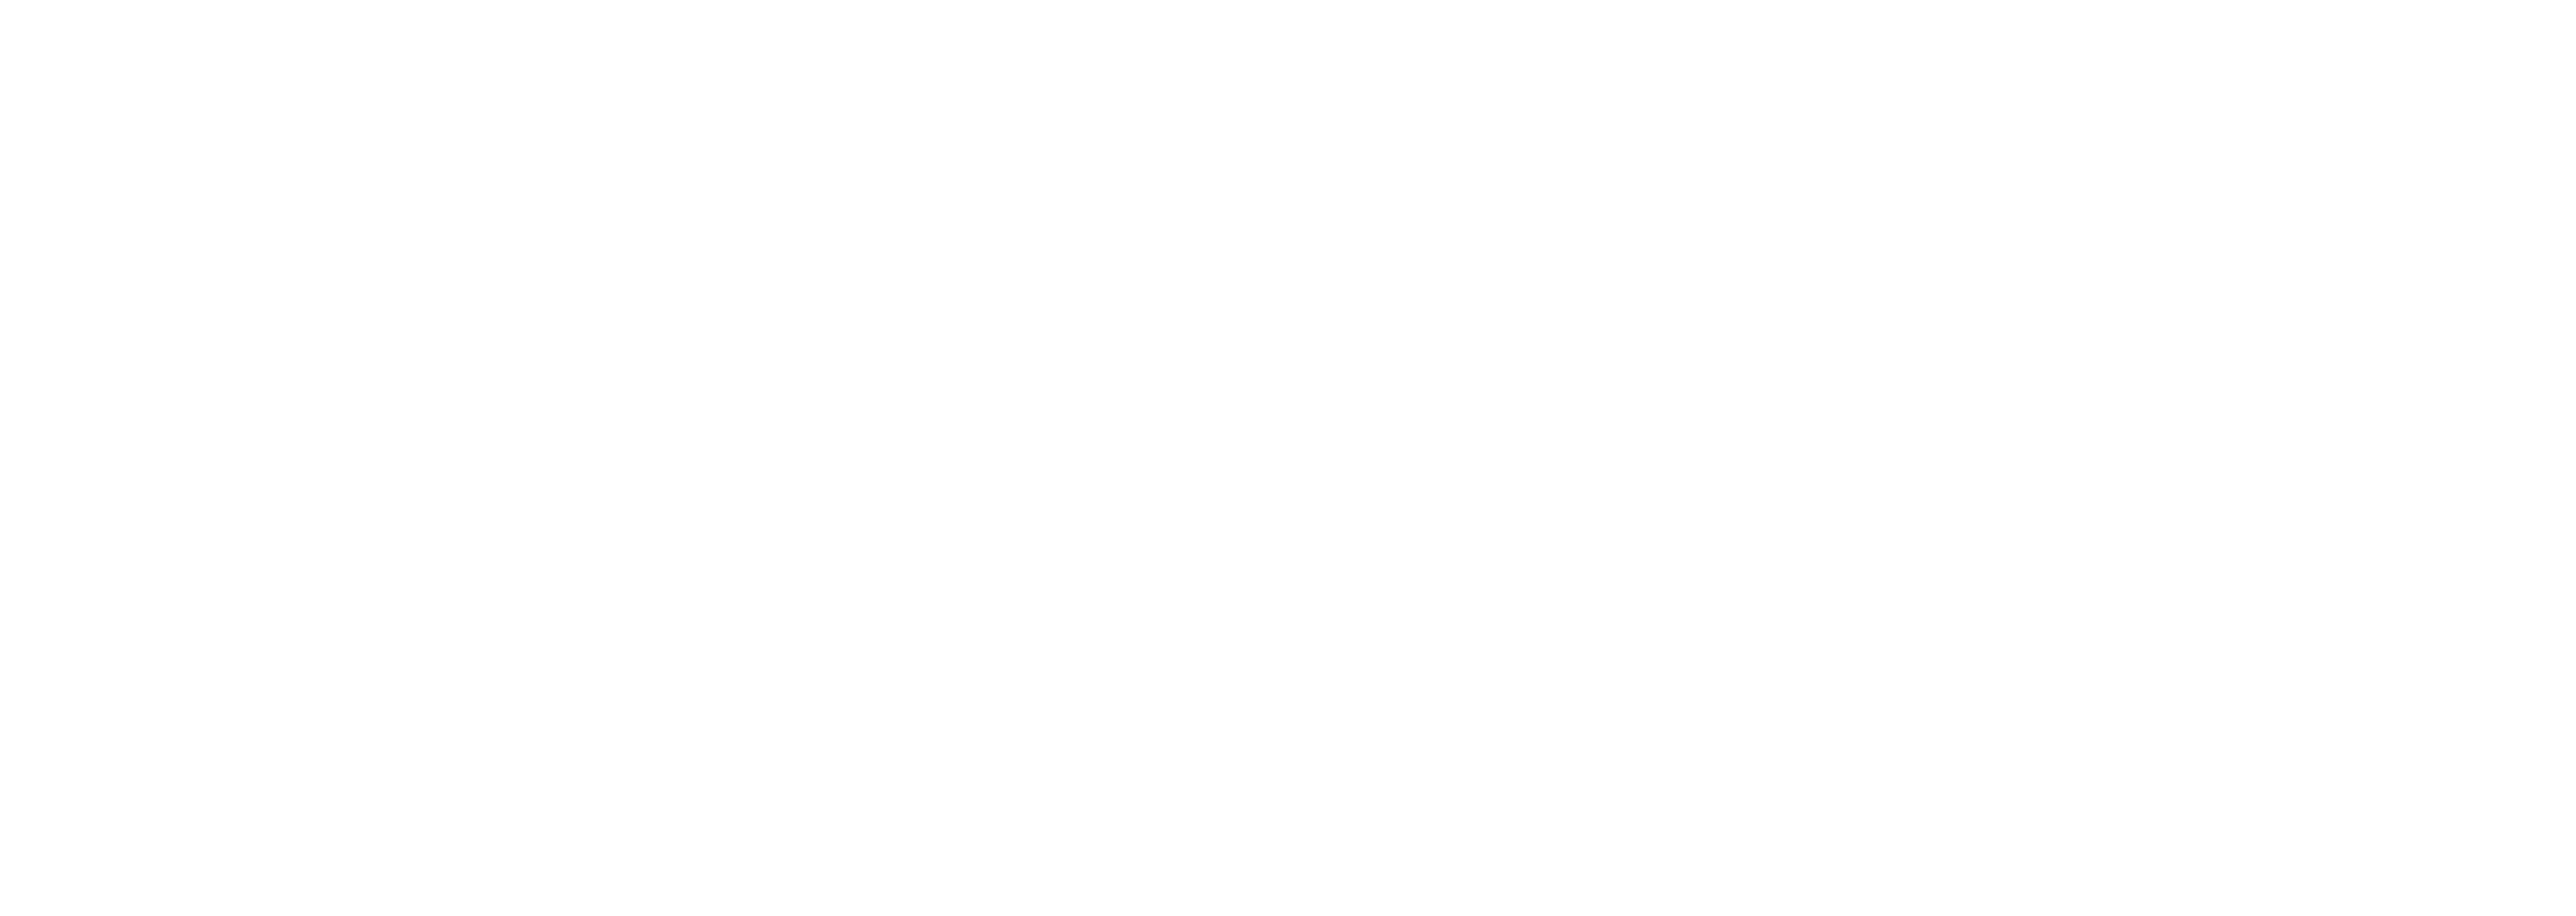 Echelon at 6311 Romaine